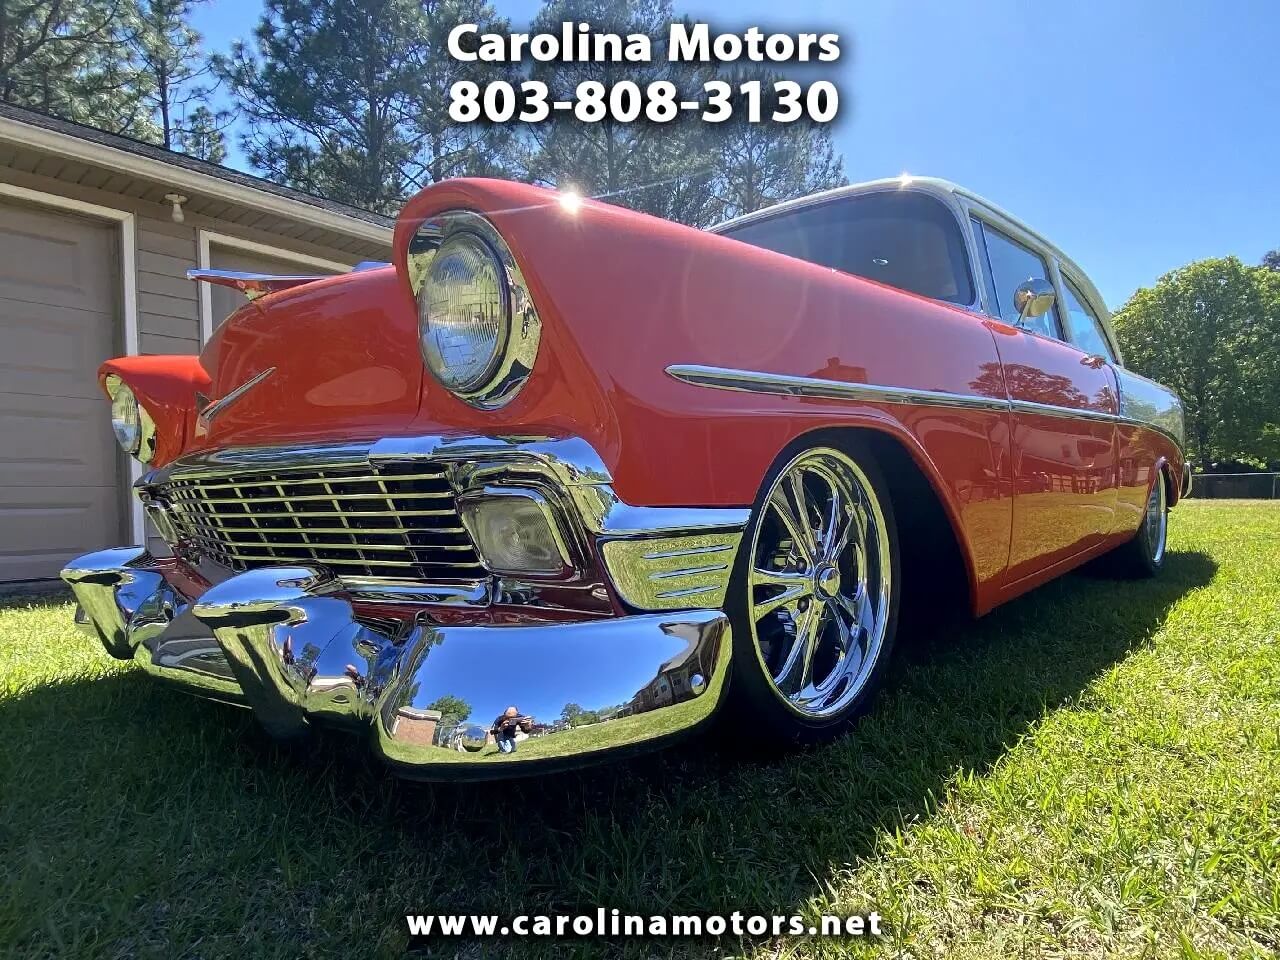 Carolina Motors